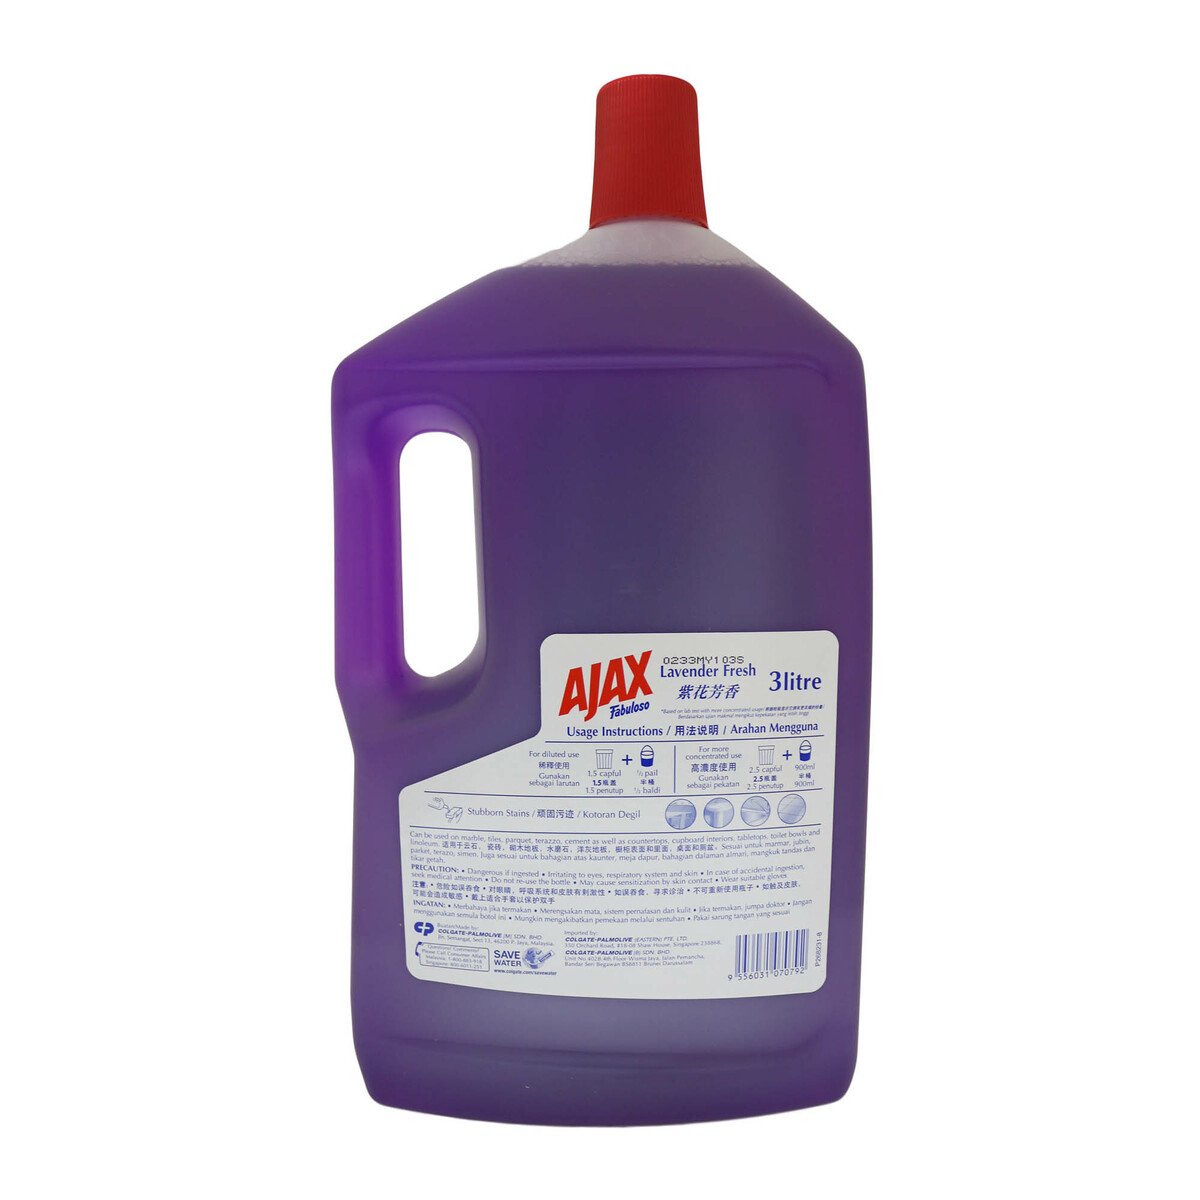 Ajax Fabuloso Purple Multipurpose Cleaner 3Litre